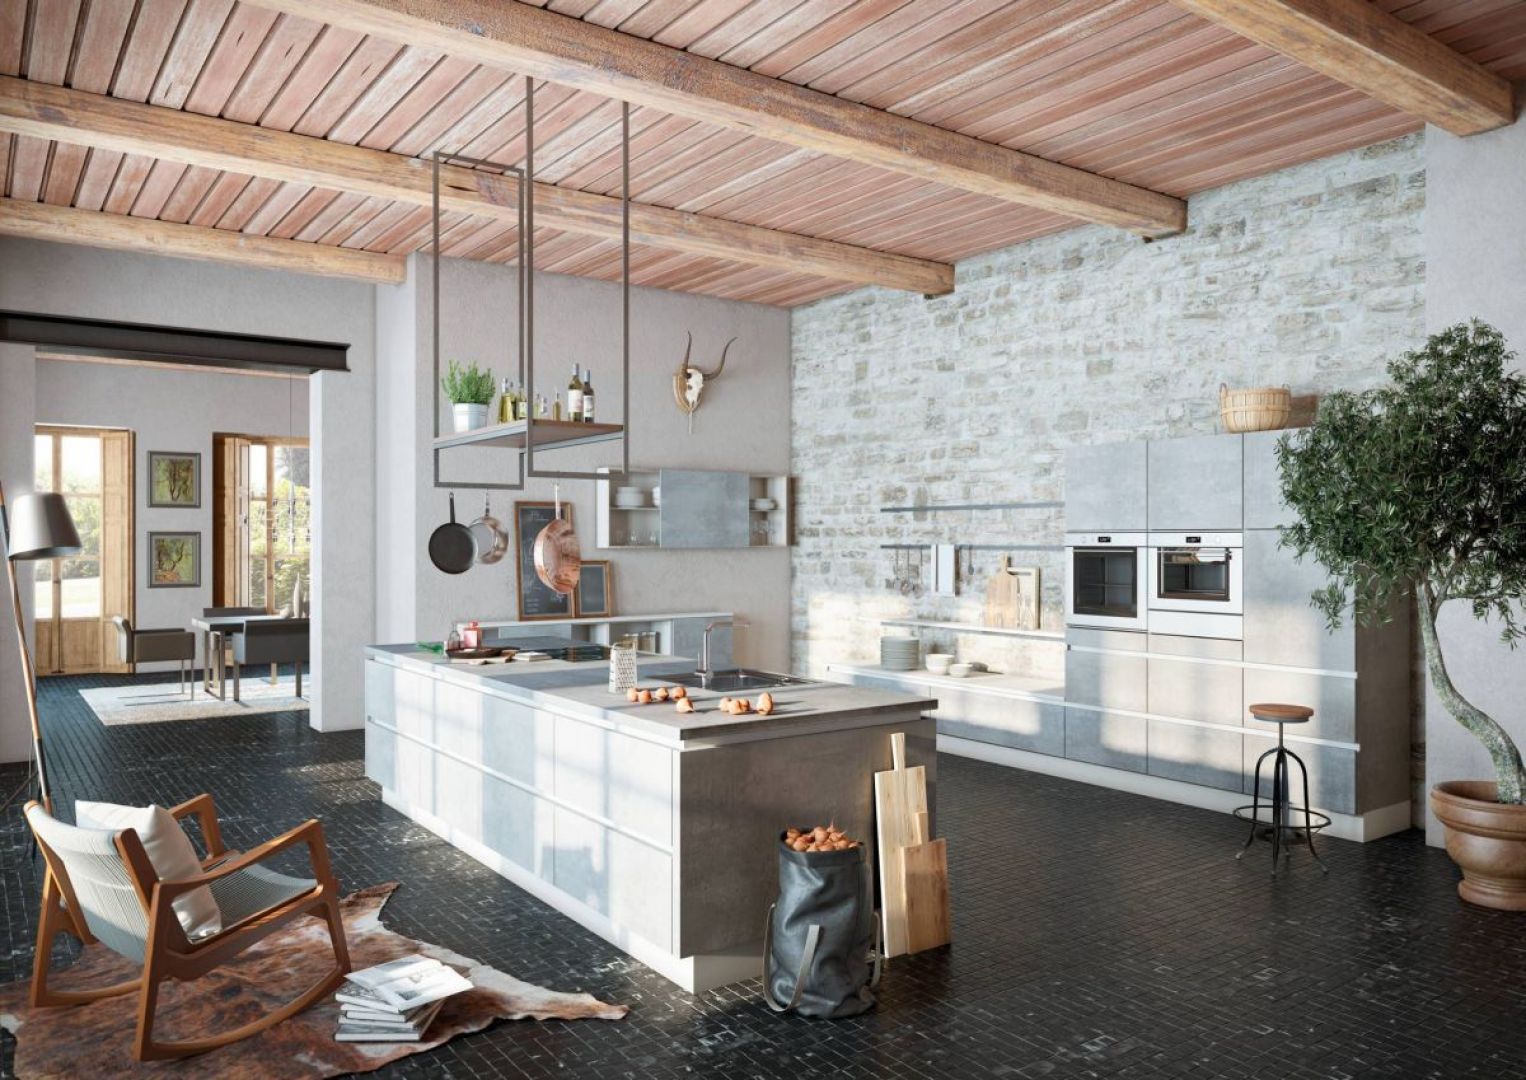 Odkryta więźba dachowa lub drewniane belki, cegła lub beton na ścianie, stylowe oświetlenie to główne wyznaczniki stylu loft w kuchni. Fot. Wellmann